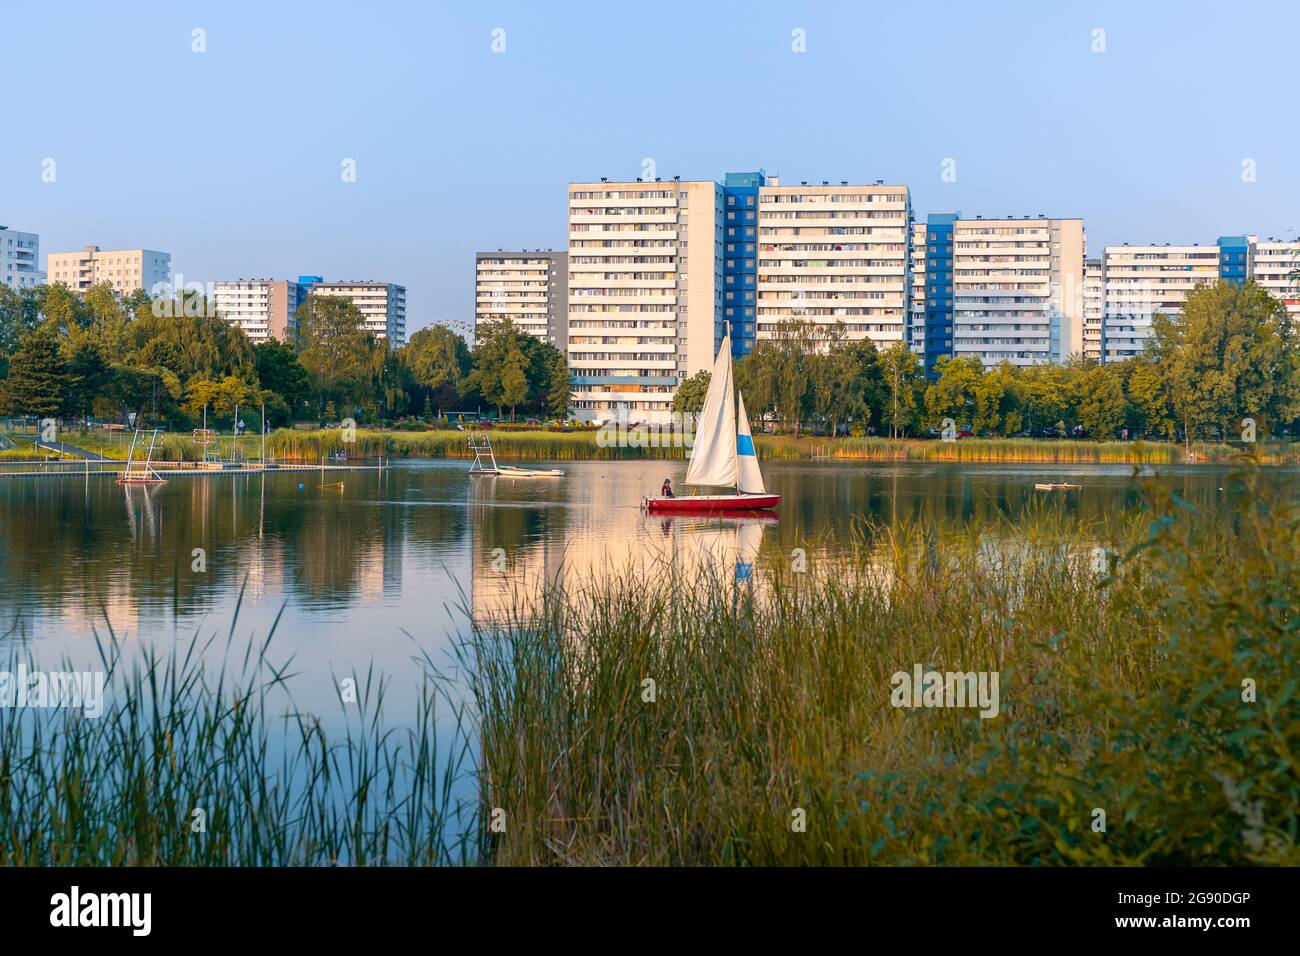 Rotes Segelboot segelt in dem kleinen See, umgeben von Bäumen und Sträuchern. Hohe Wohngebäude im Hintergrund. Katowice, Schlesien, Polen. Stockfoto